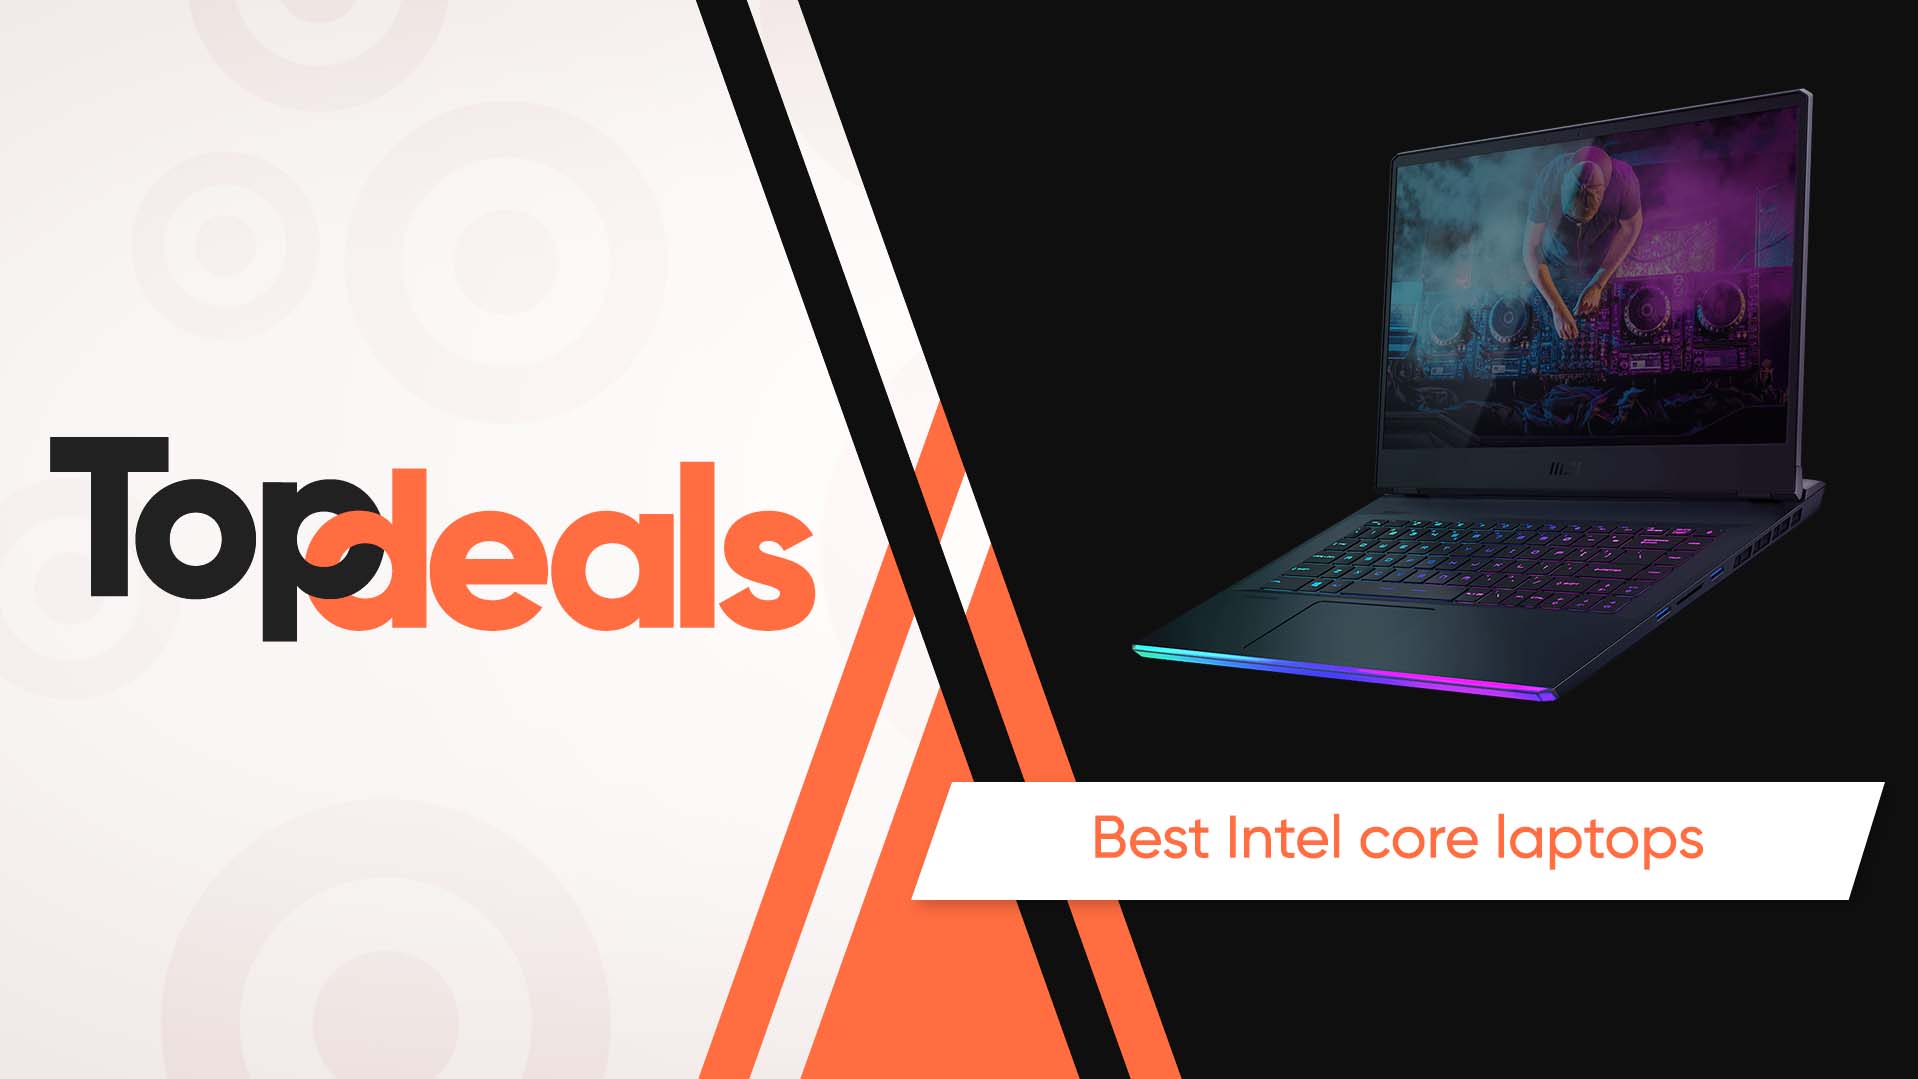 Best Intel core laptops